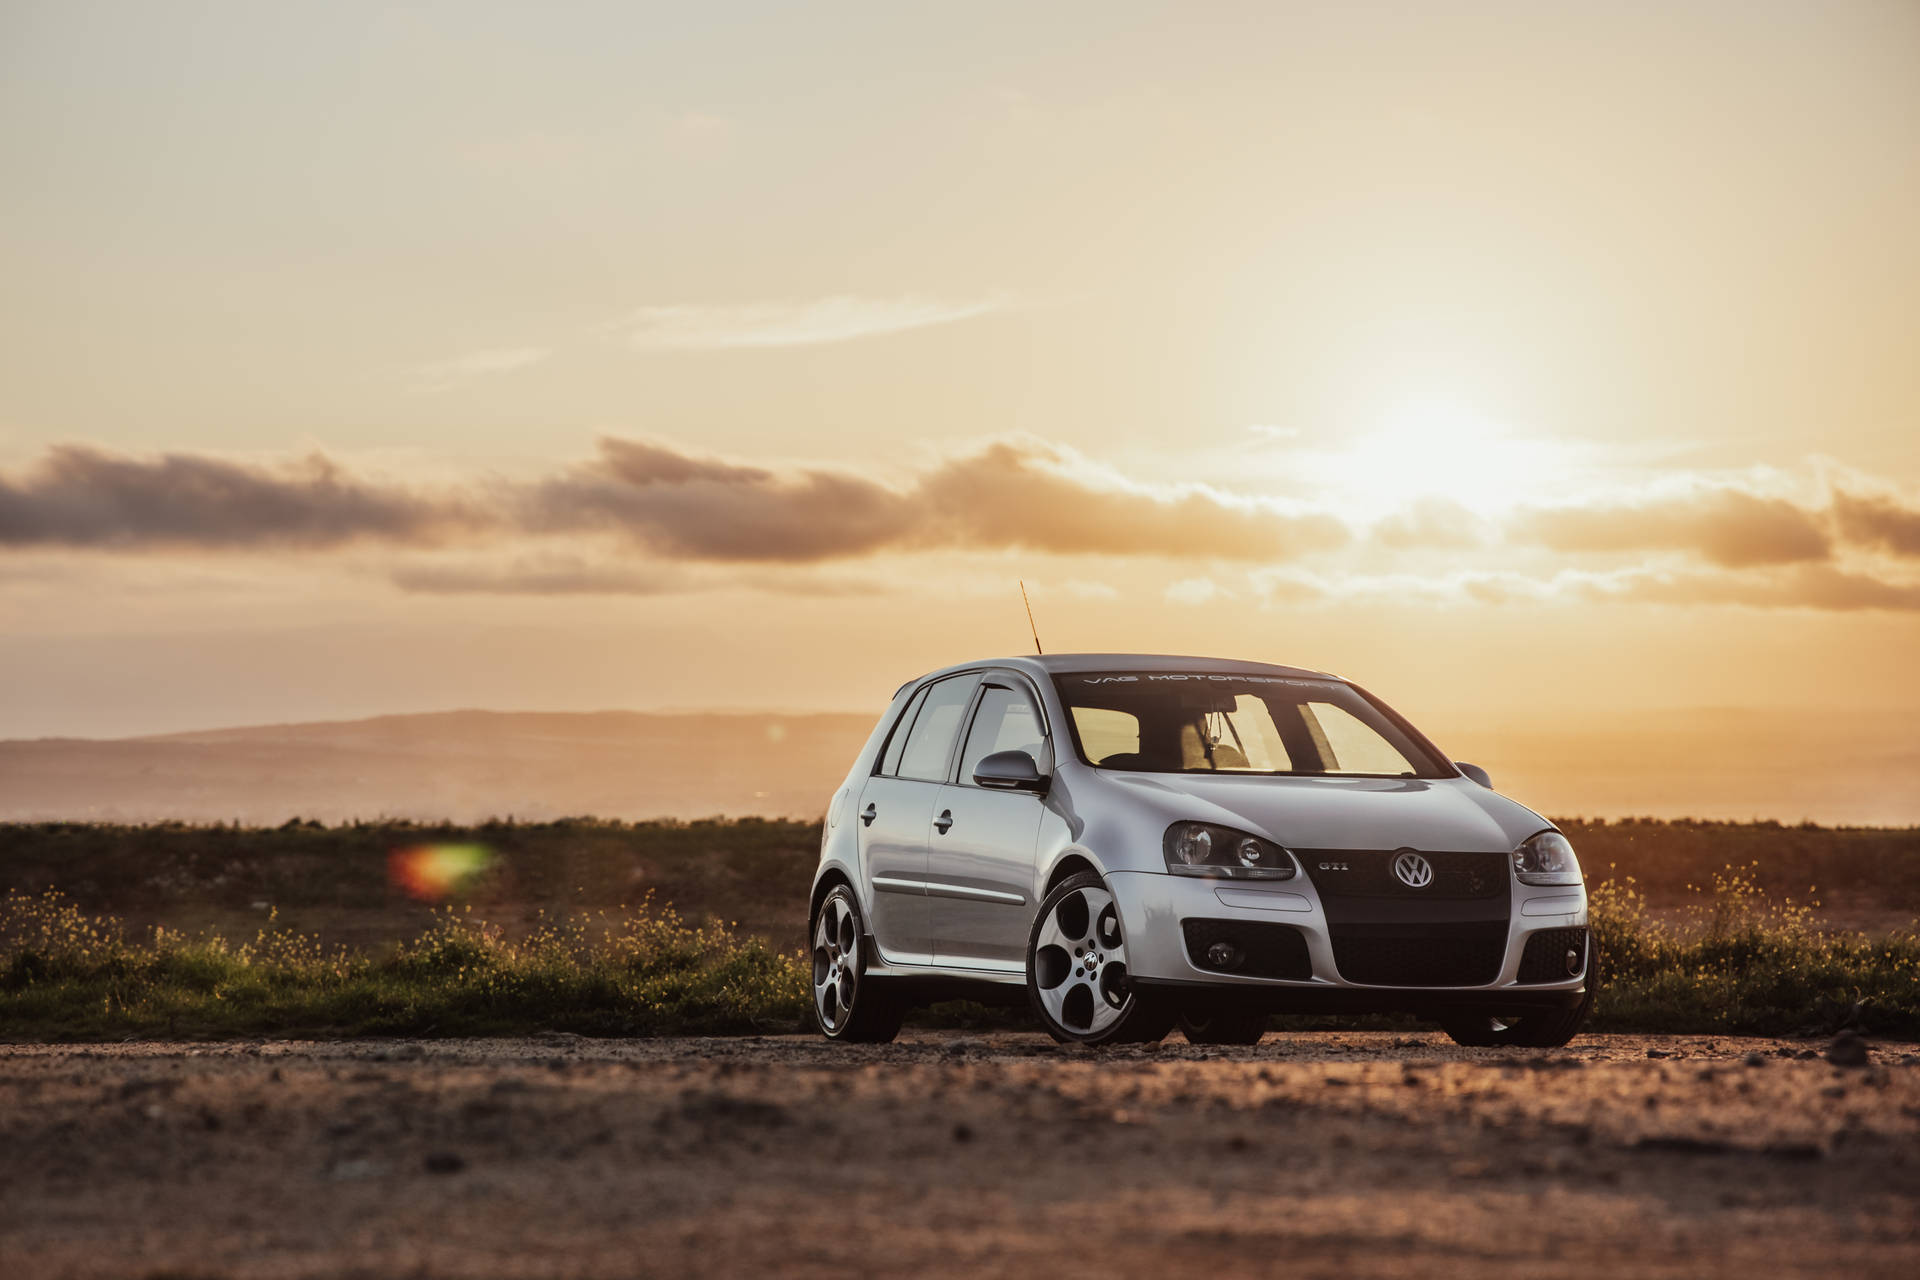 Silver Volkswagen Golf Gti In Sunset Background